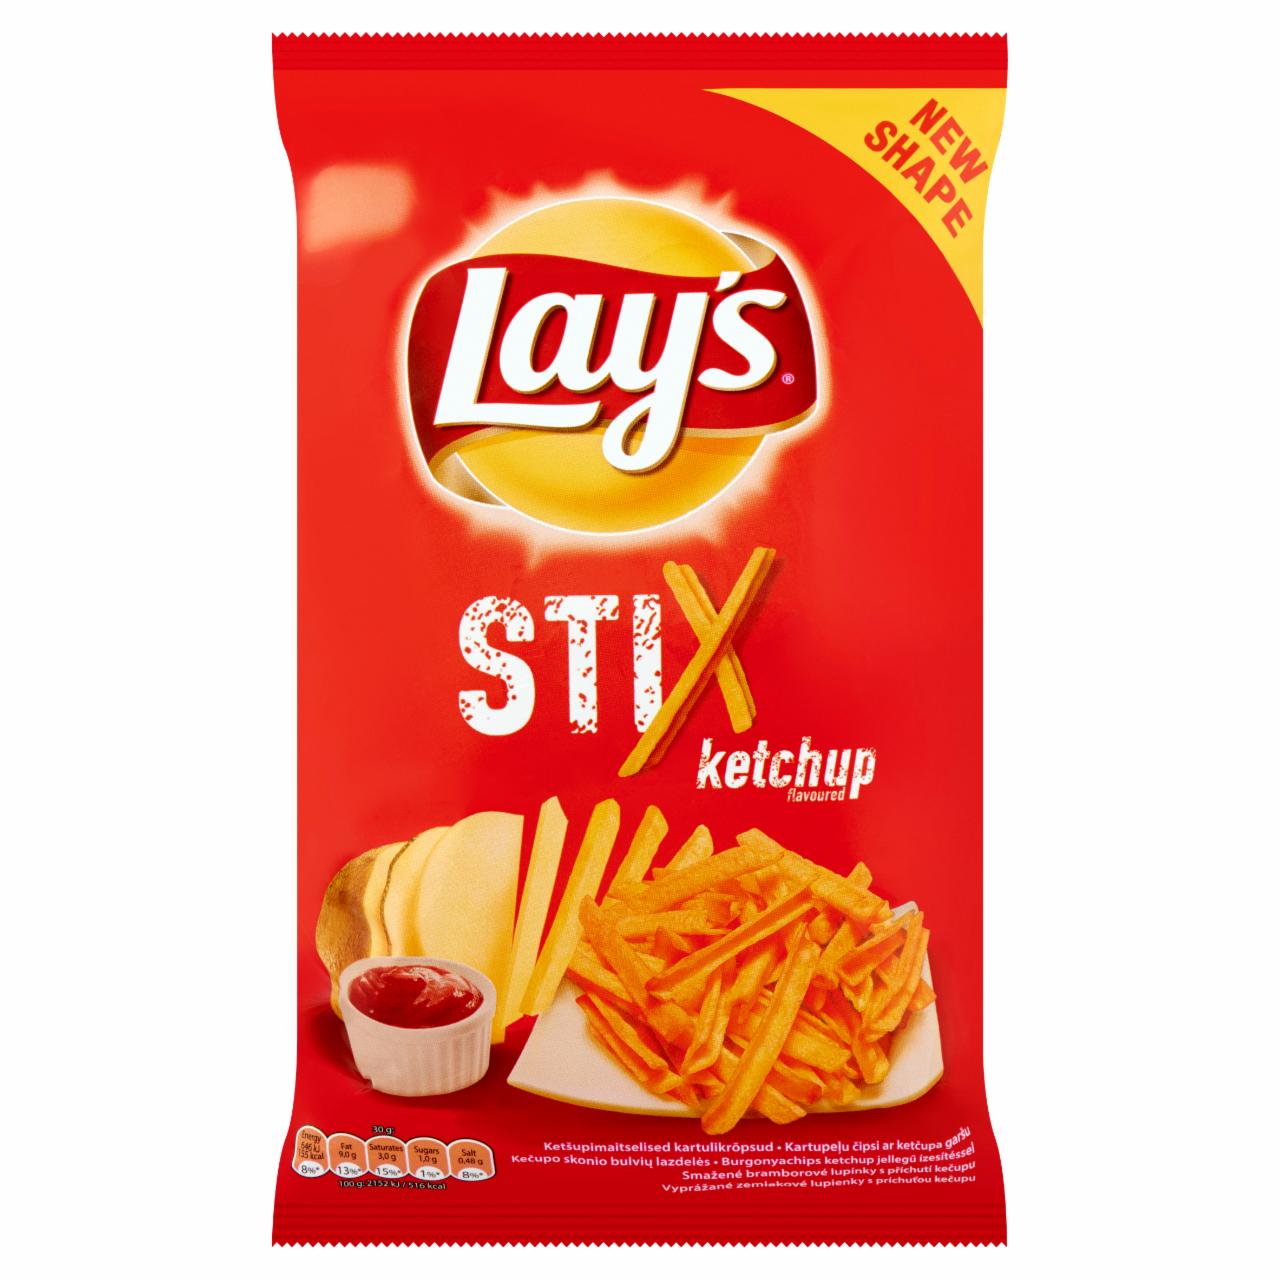 Képek - Lay's Stix burgonyachips ketchup jellegű ízesítéssel 70 g